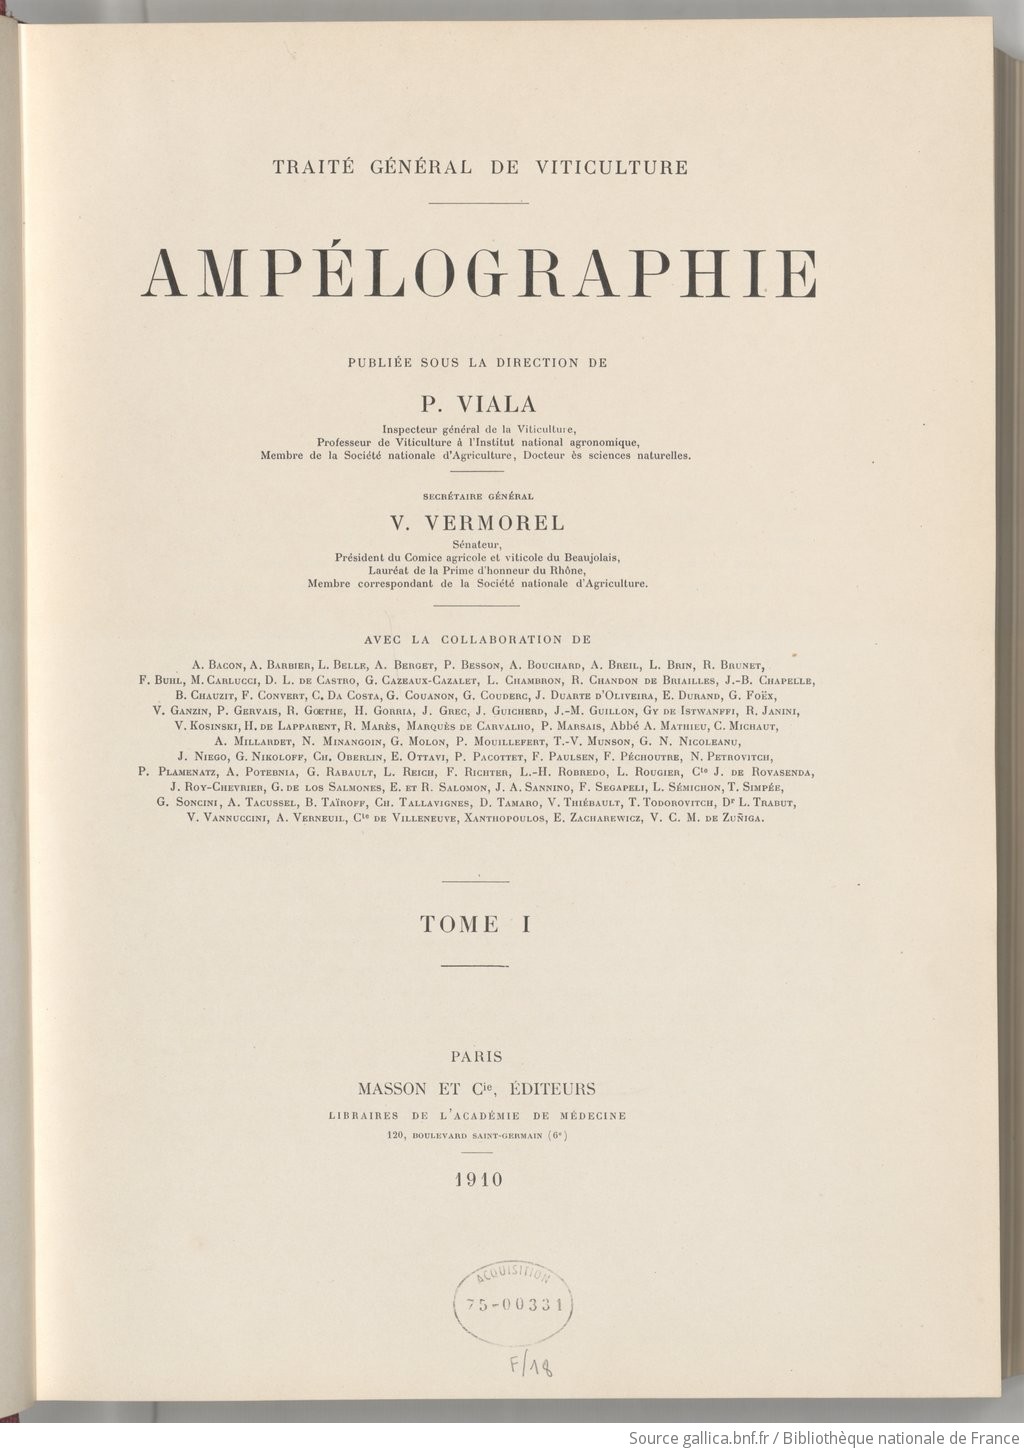 Ampélographie : traité général de viticulture. Tome 1 / publiée sous la direction de P. Viala,..., V. Vermorel,... ; avec la collaboration de A. Bacon, A. Barbier, A. Berget... [et al.]